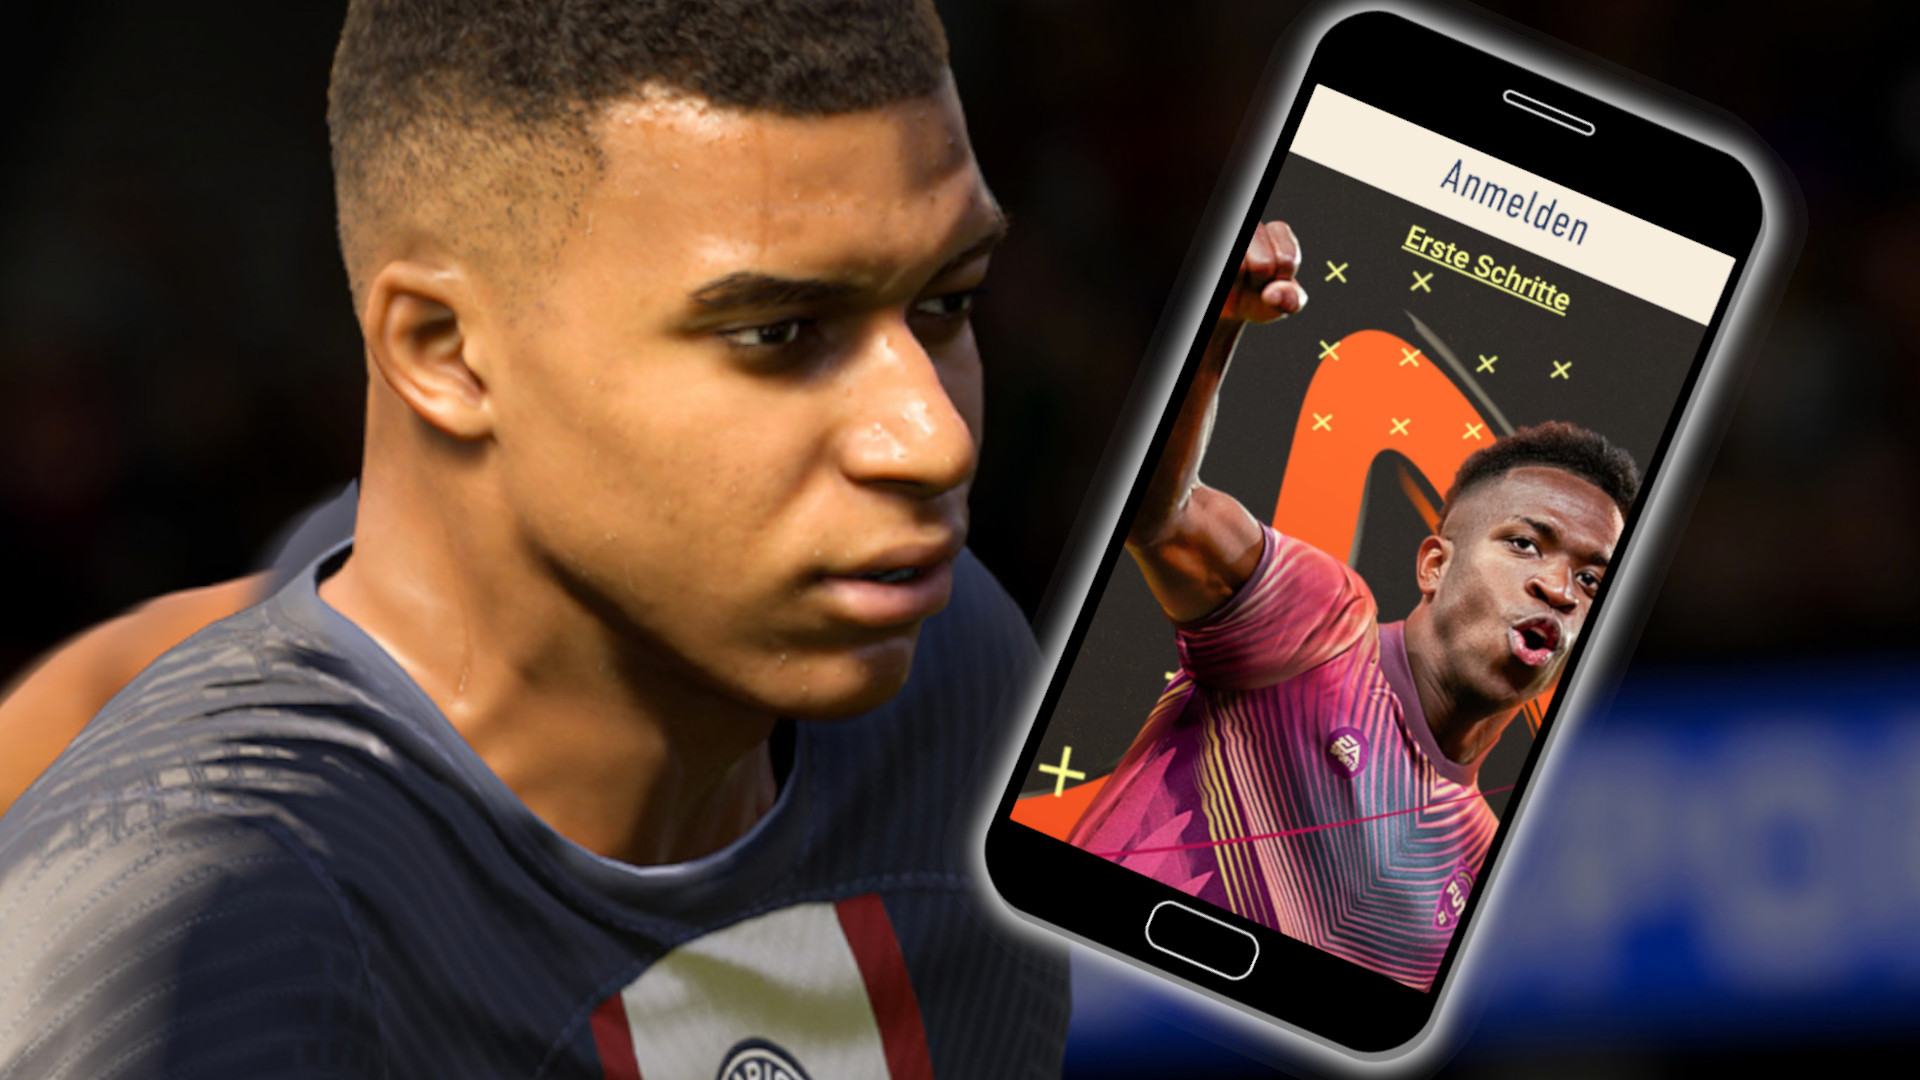 FIFA 23: Companion App Release – Alle Infos zu Start, Login und